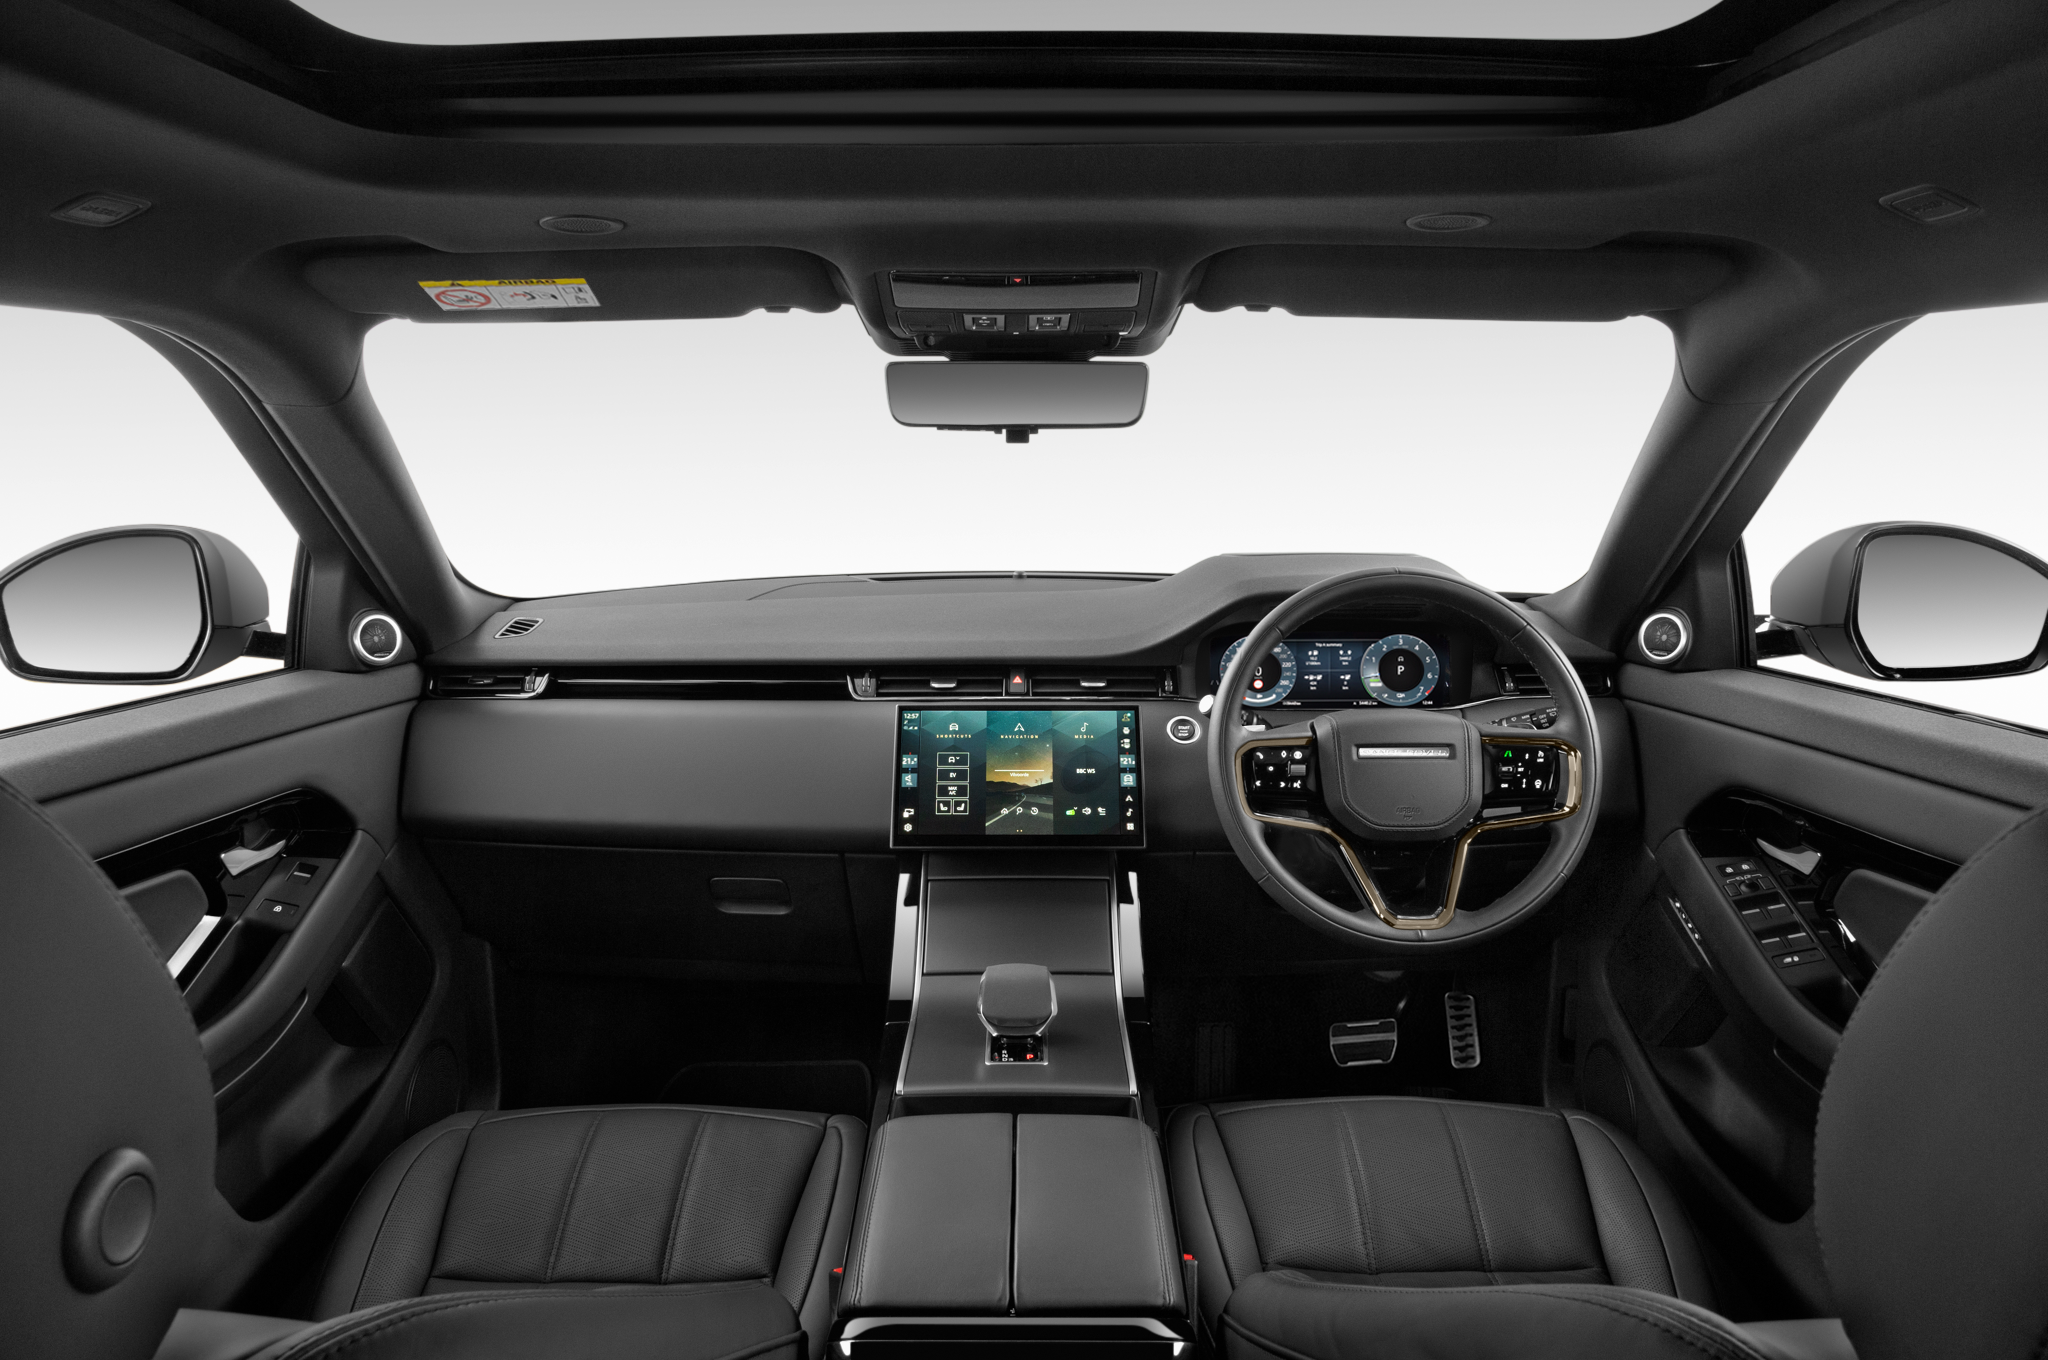 Range Rover Evoque Dashboard